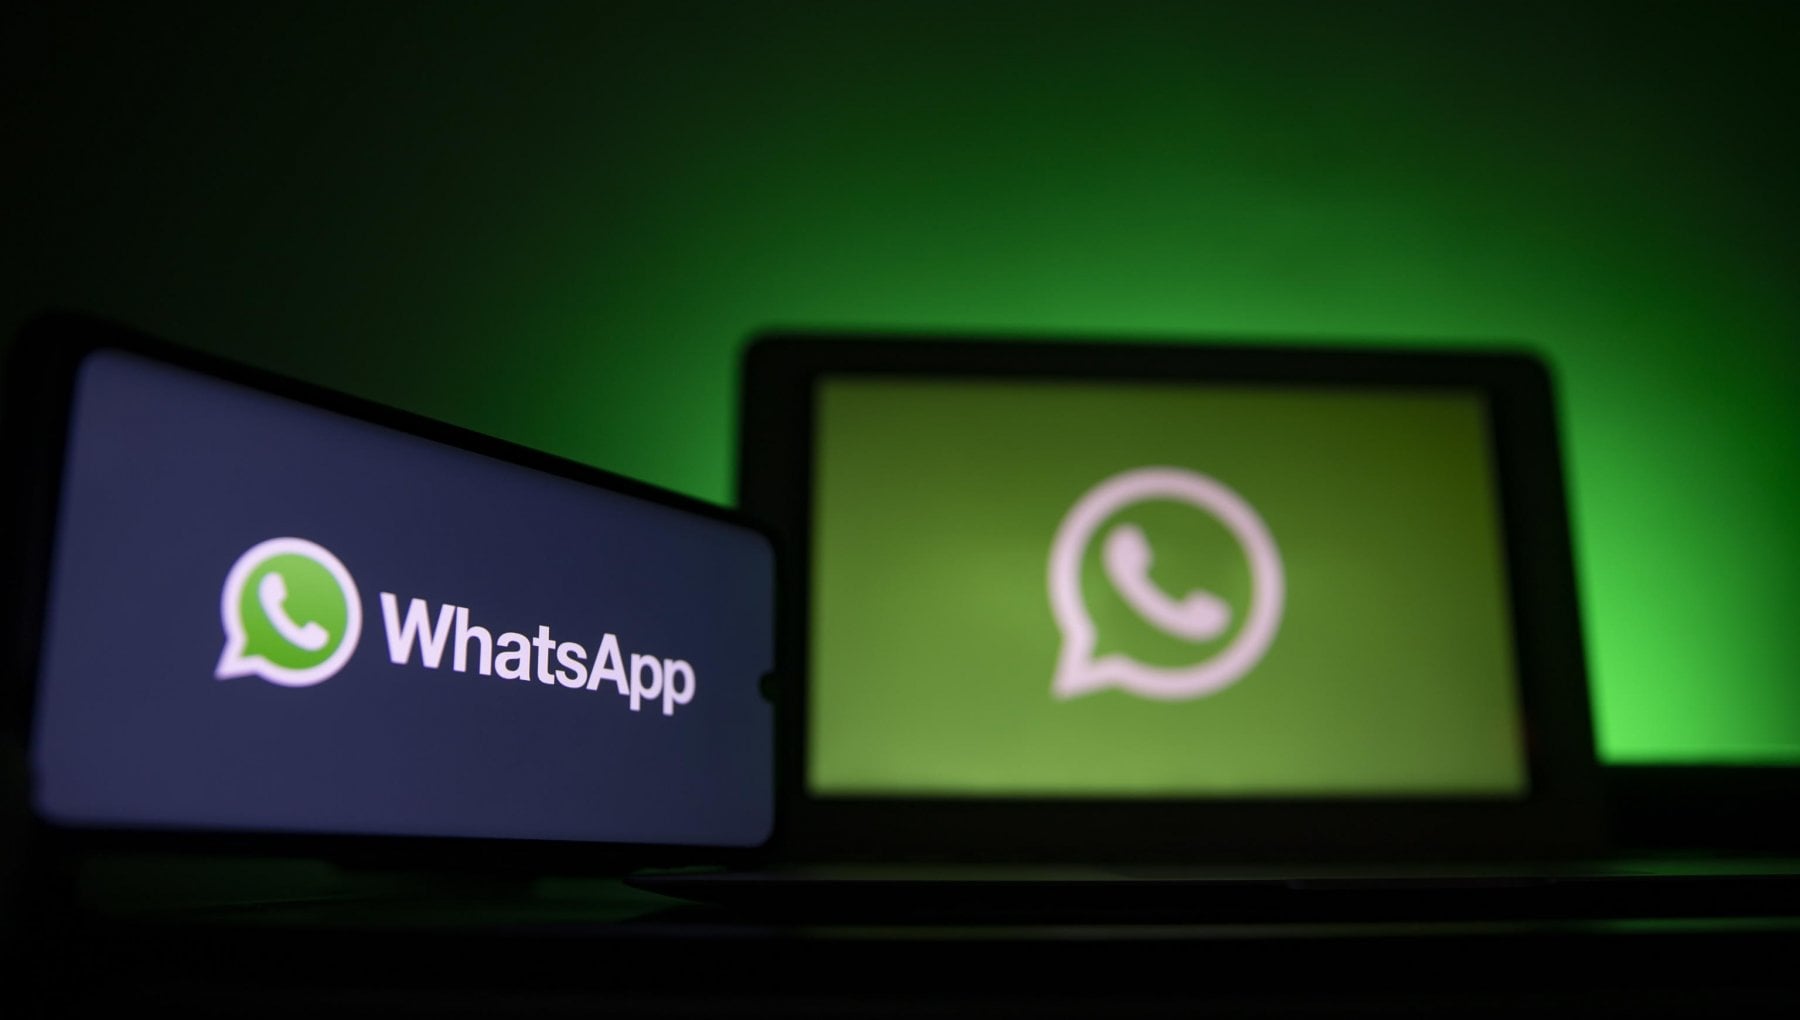 WhatsApp fined $ 225 million in Ireland: 